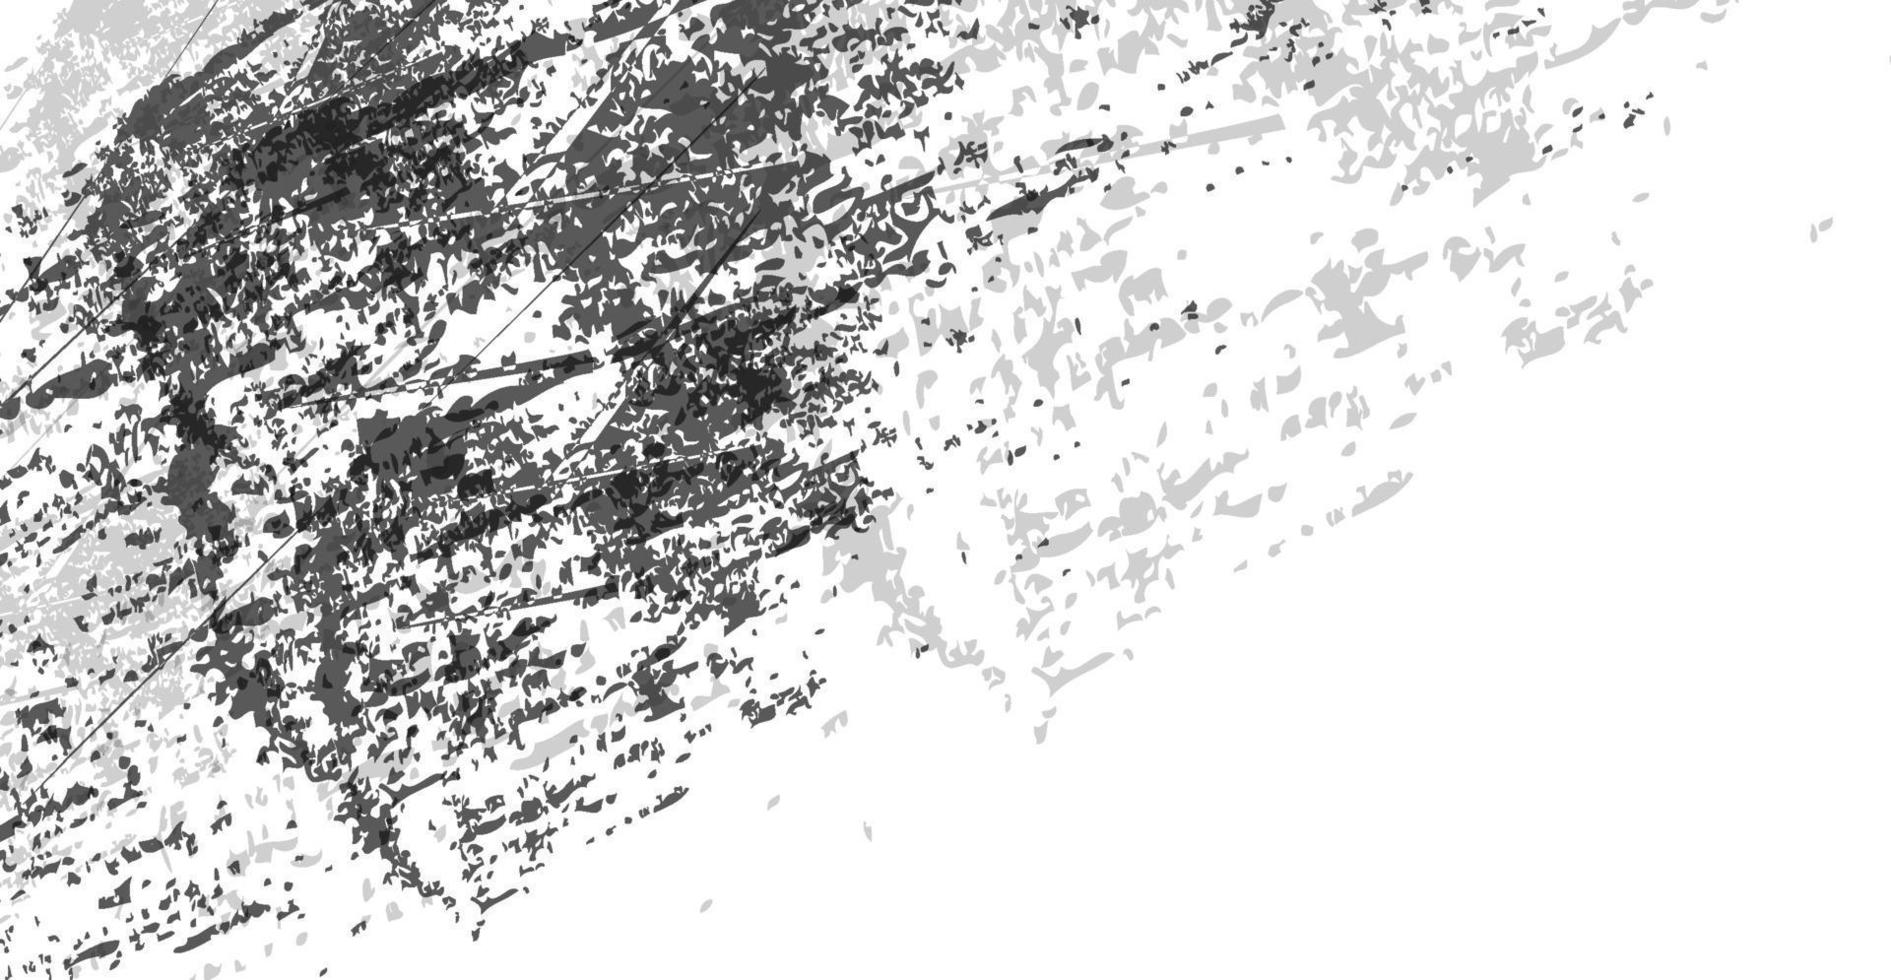 abstrakt grunge textur svart och vit bakgrund vektor